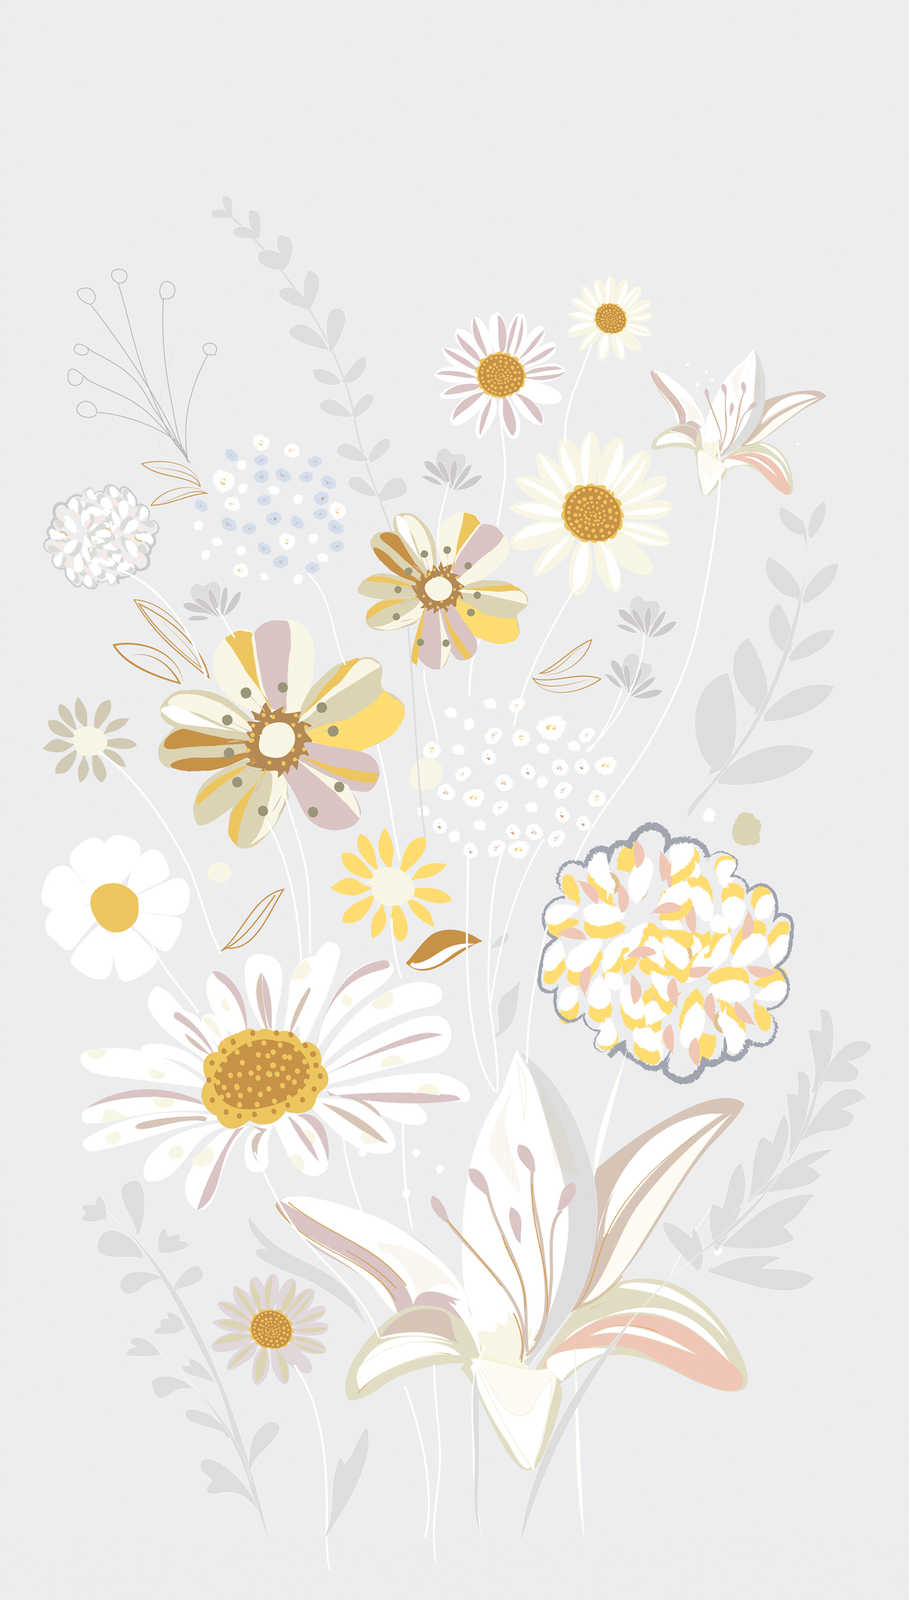             Blumenmuster Tapete mit Gräsern in hellen Farben – Grau, Gelb, Beige
        